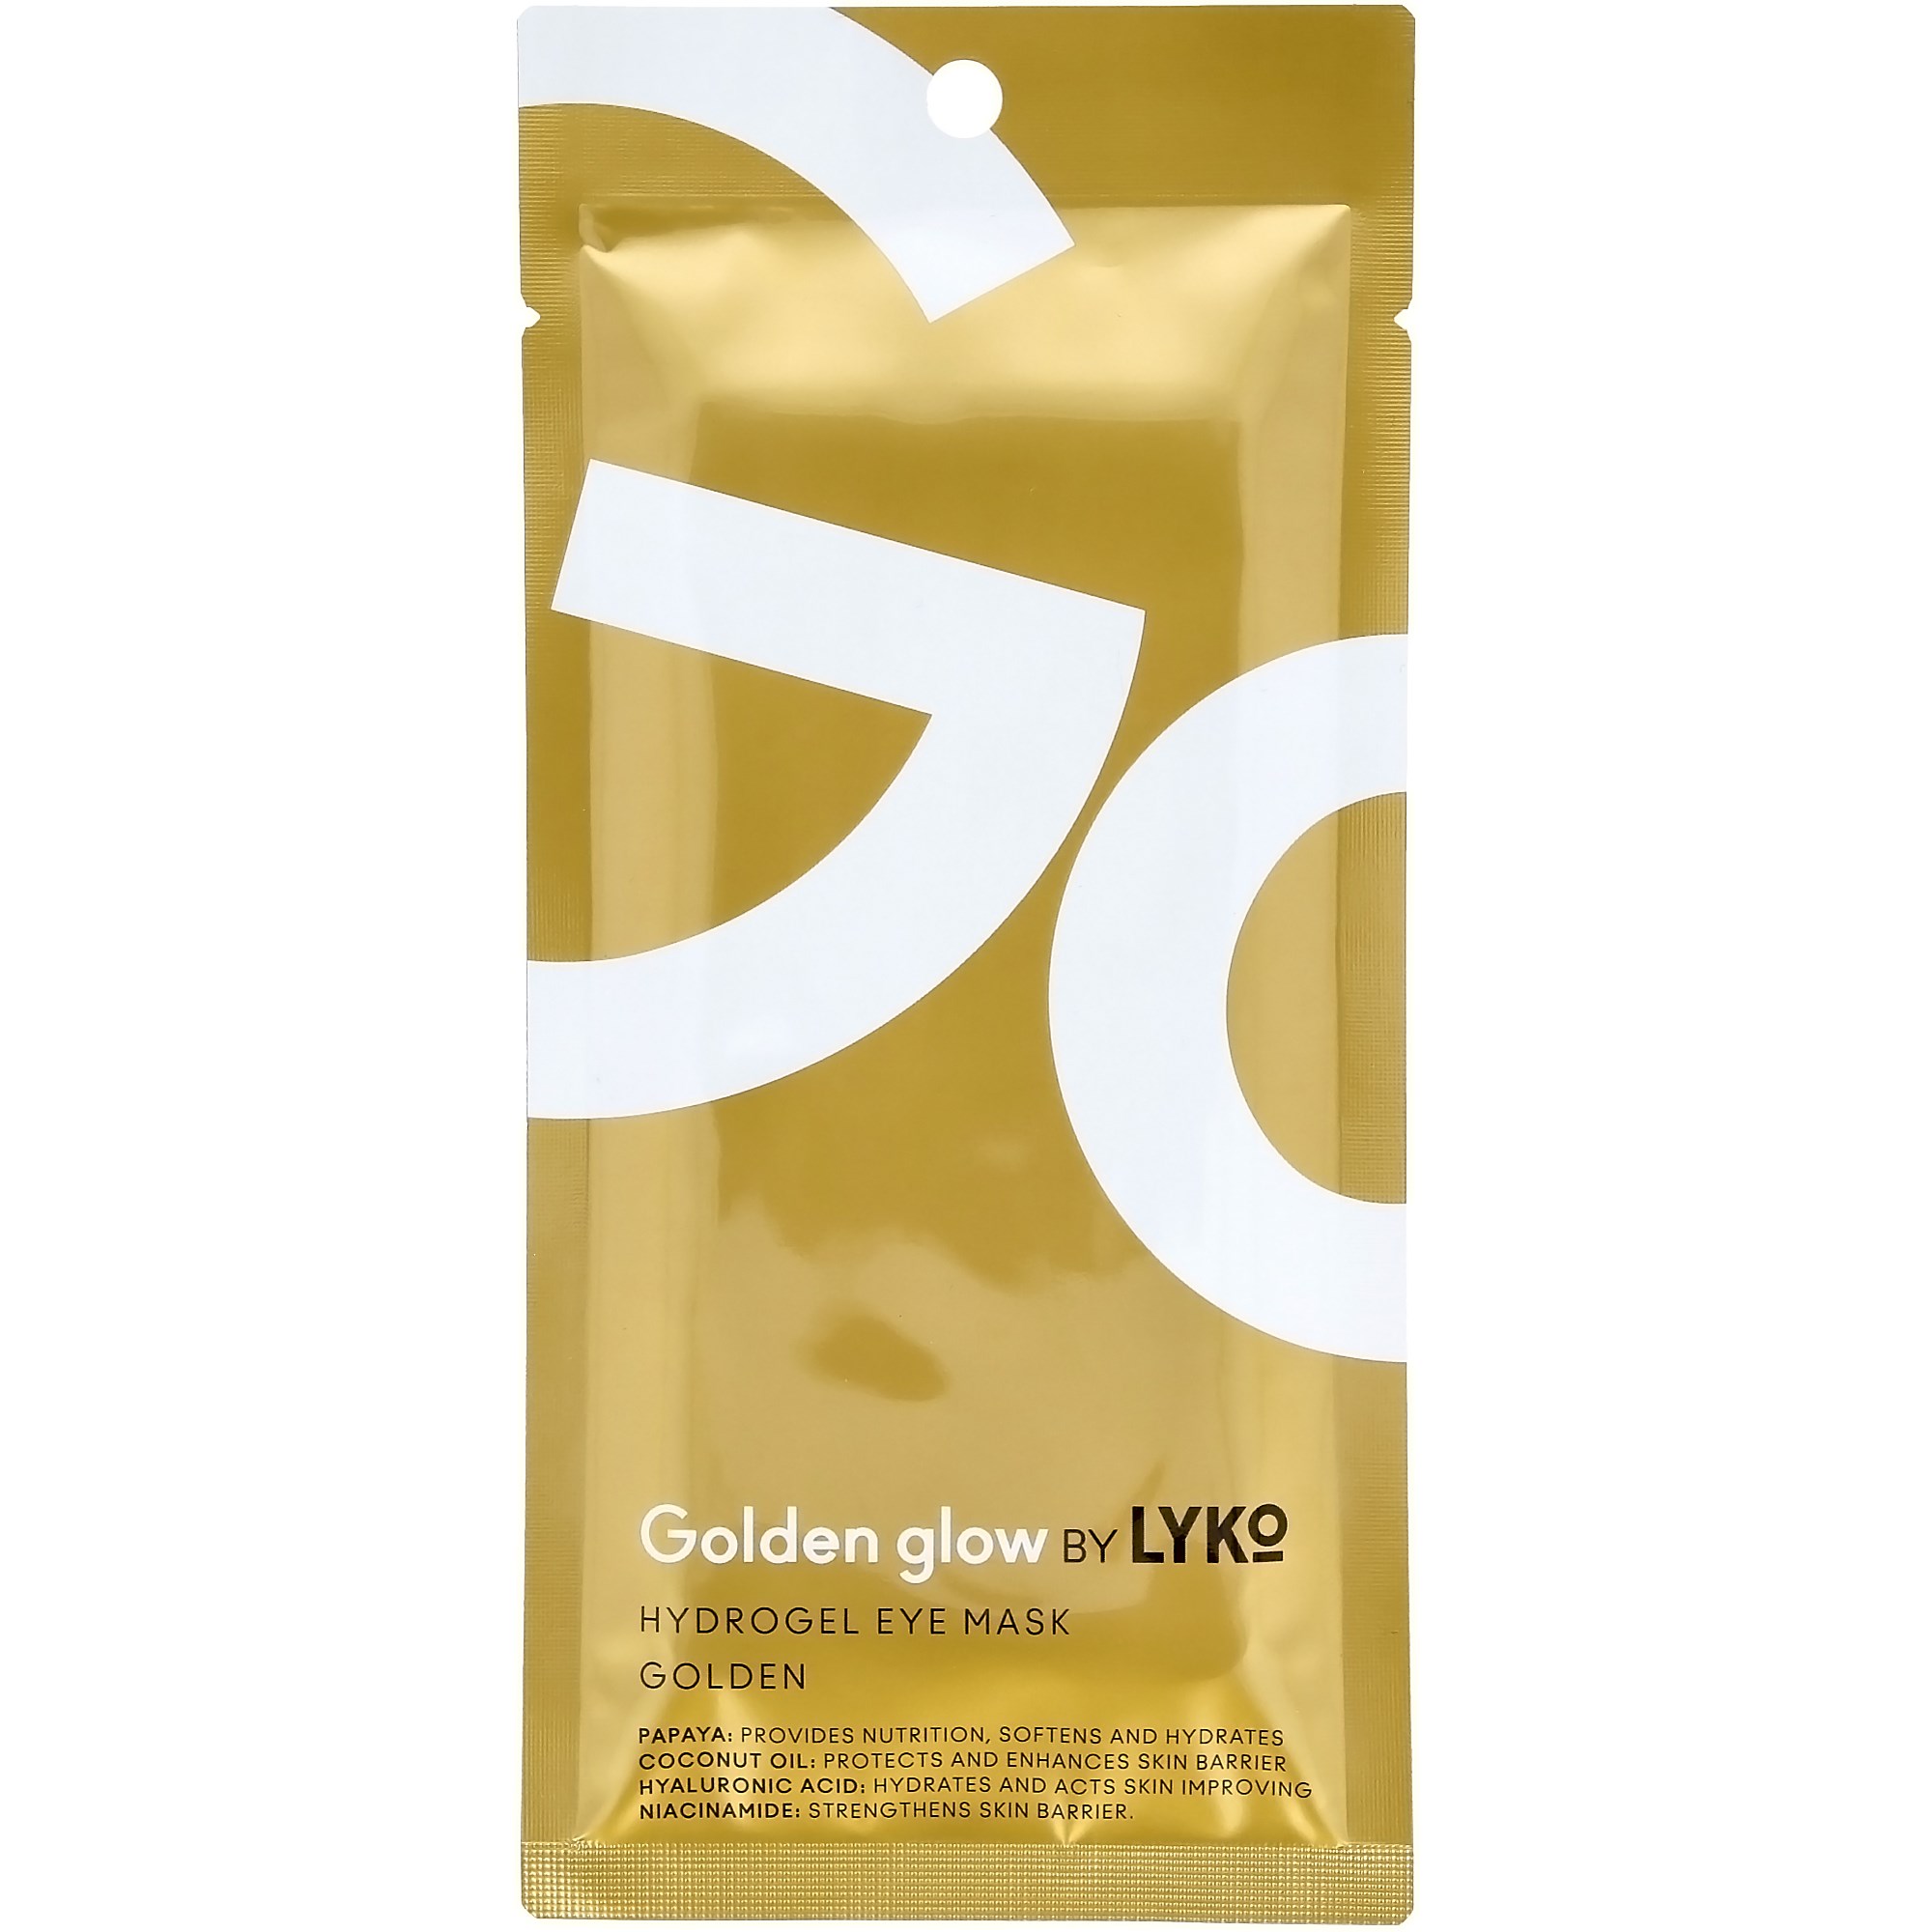 Läs mer om By Lyko Golden glow Hydrogel Eye Mask